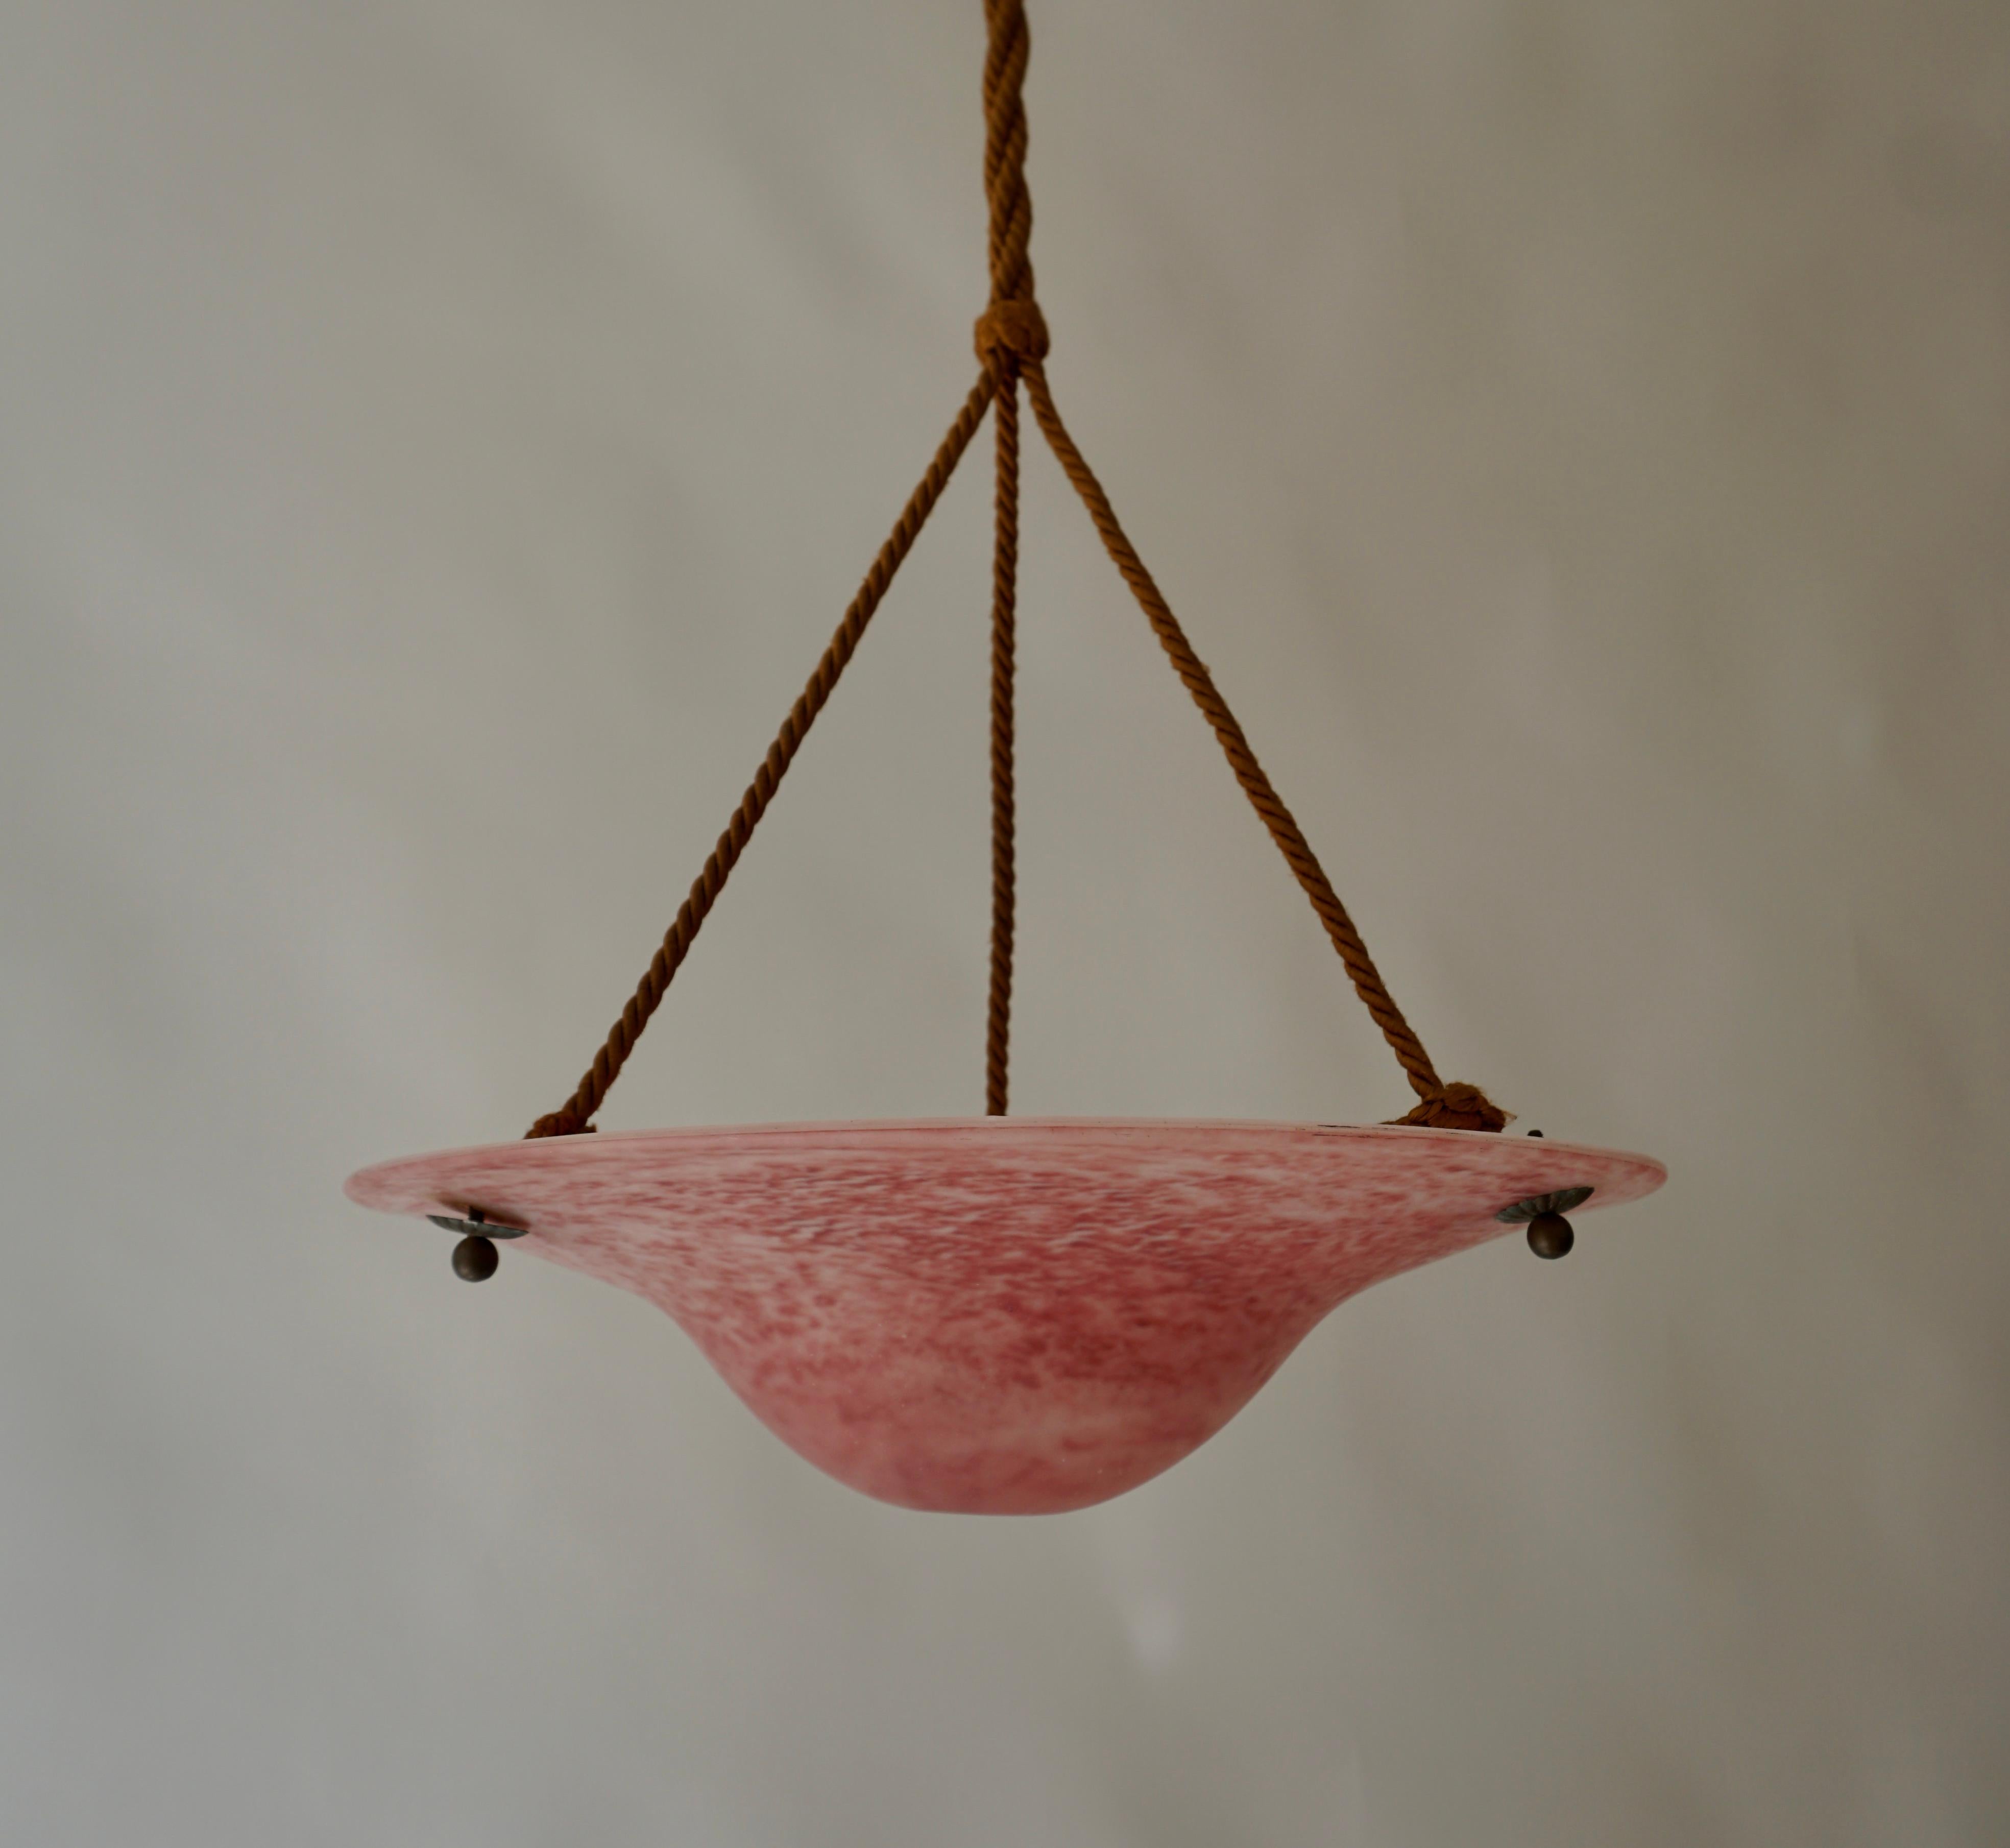 Art Deco rosa Glas Deckenleuchte halb bündig montieren.

Diese Original-Deckenlampe im französischen Art déco-Stil stammt aus den 1930er Jahren. Klares, schweres, hellrosa Milchglas im typischen Art Deco-Stil, die Glasschale ist in perfektem Zustand